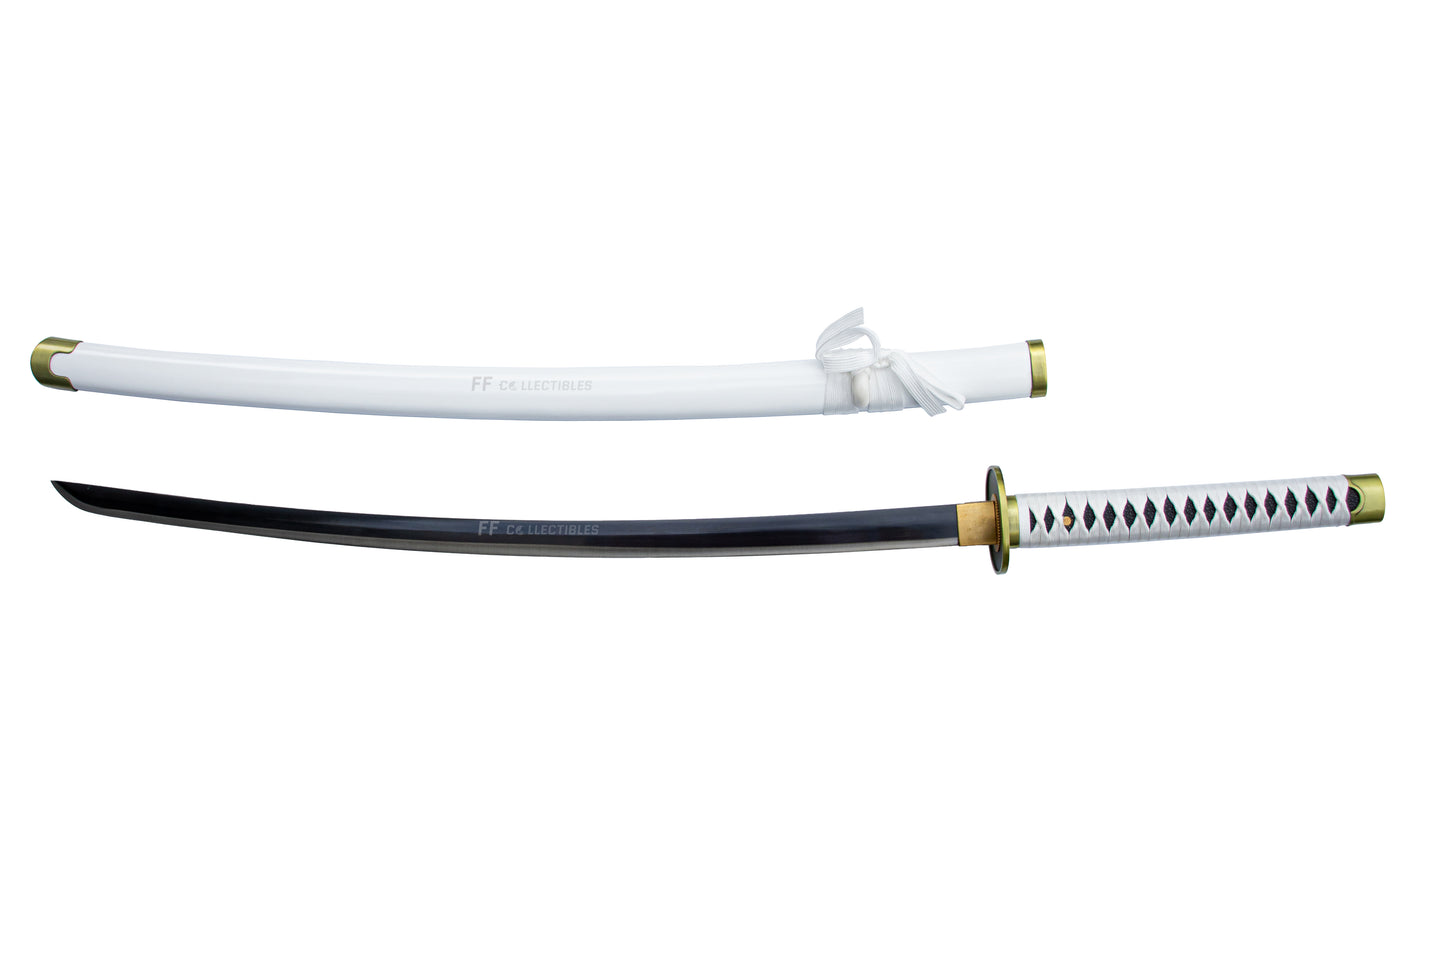 ONE PIECE – WADO ICHIMONJI, THE SWORD OF RORONOA ZORO (w FREE sword stand)